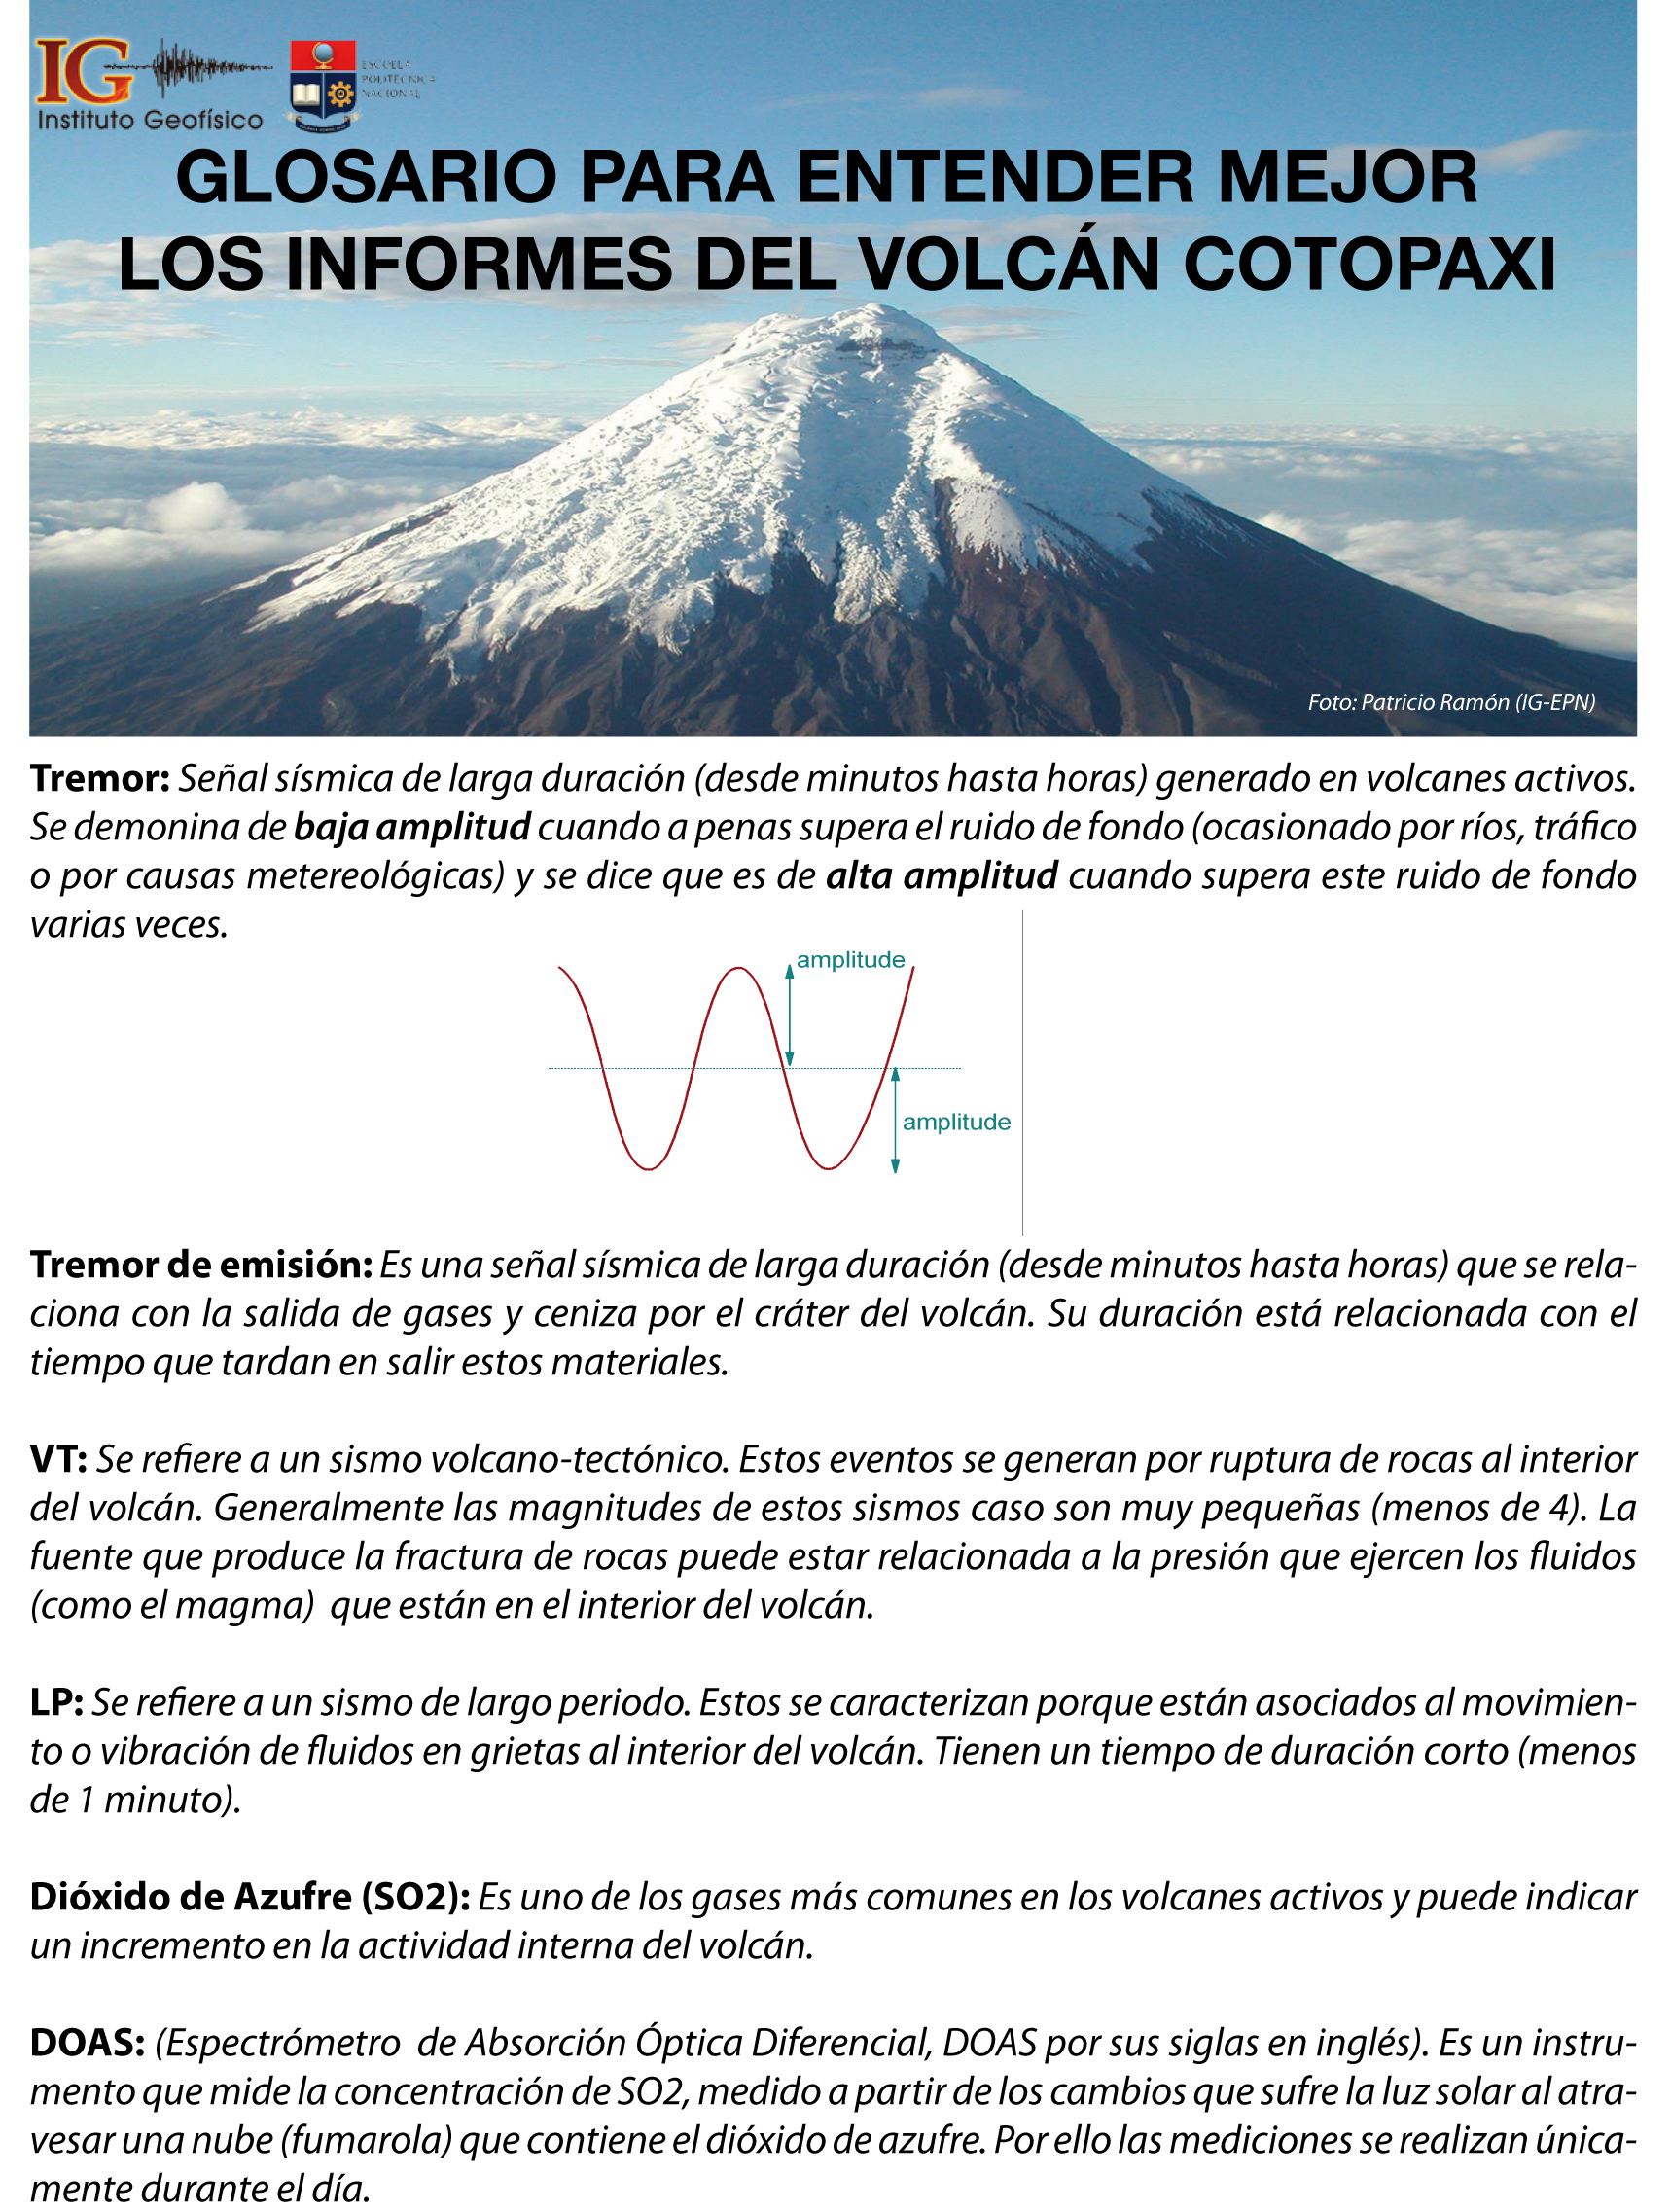 Glosario para entender mejor los informes del volcán Cotopaxi